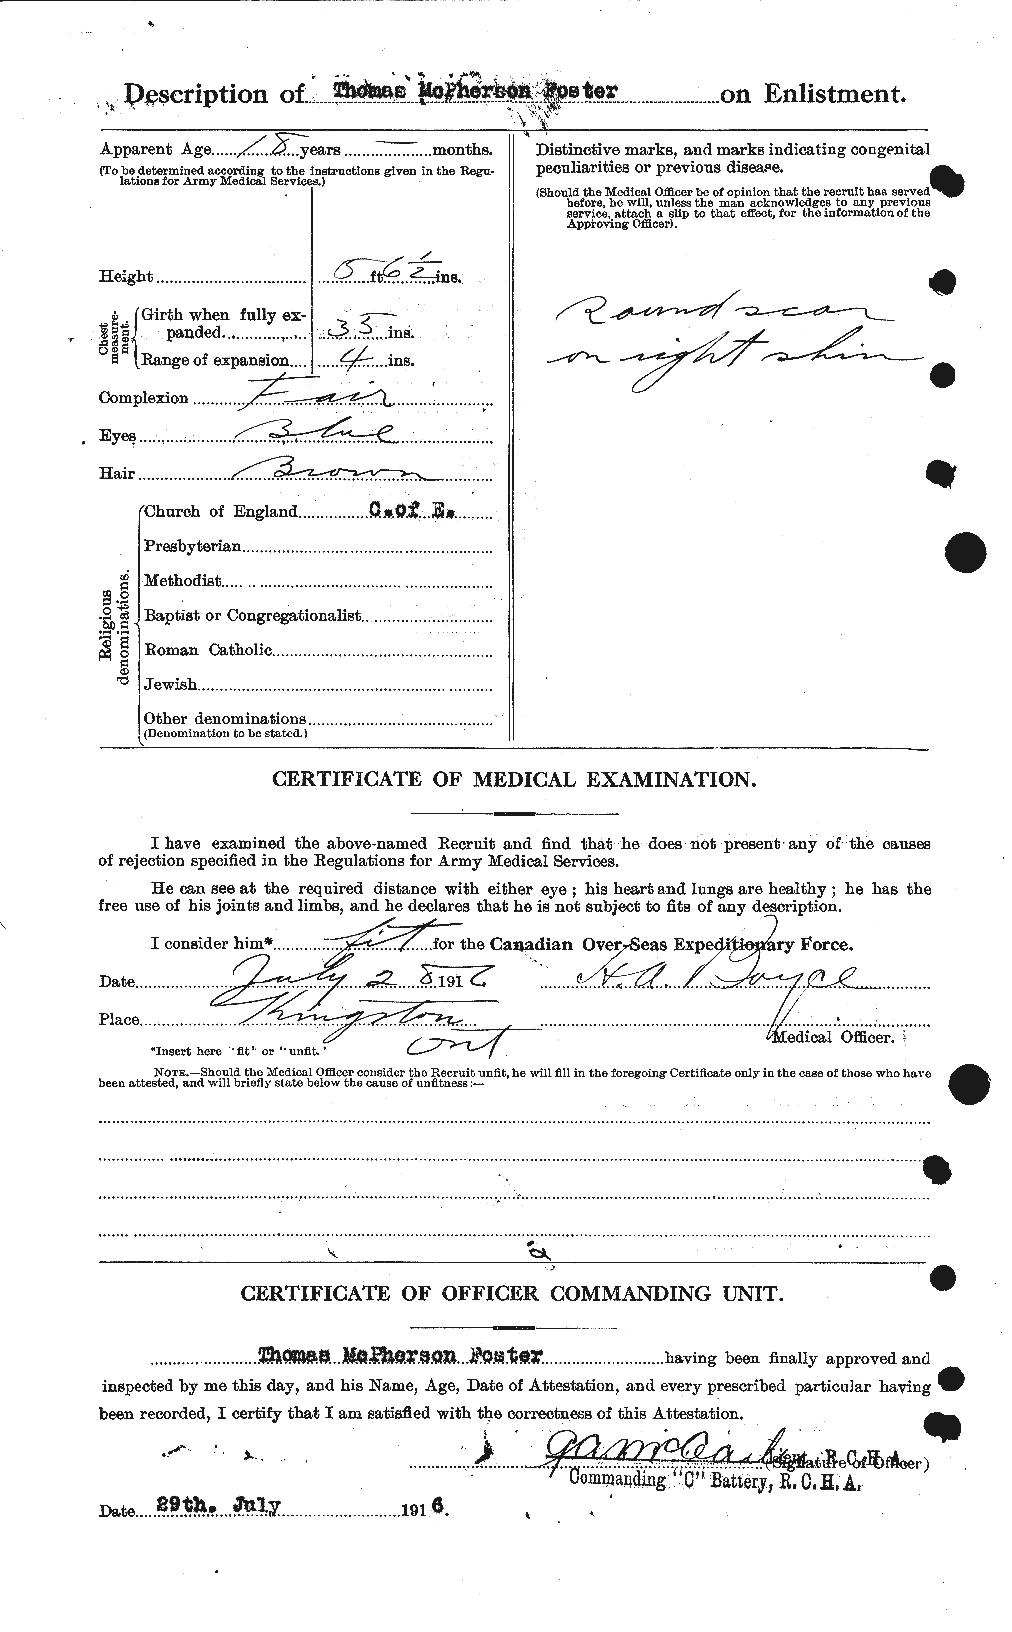 Dossiers du Personnel de la Première Guerre mondiale - CEC 335243b